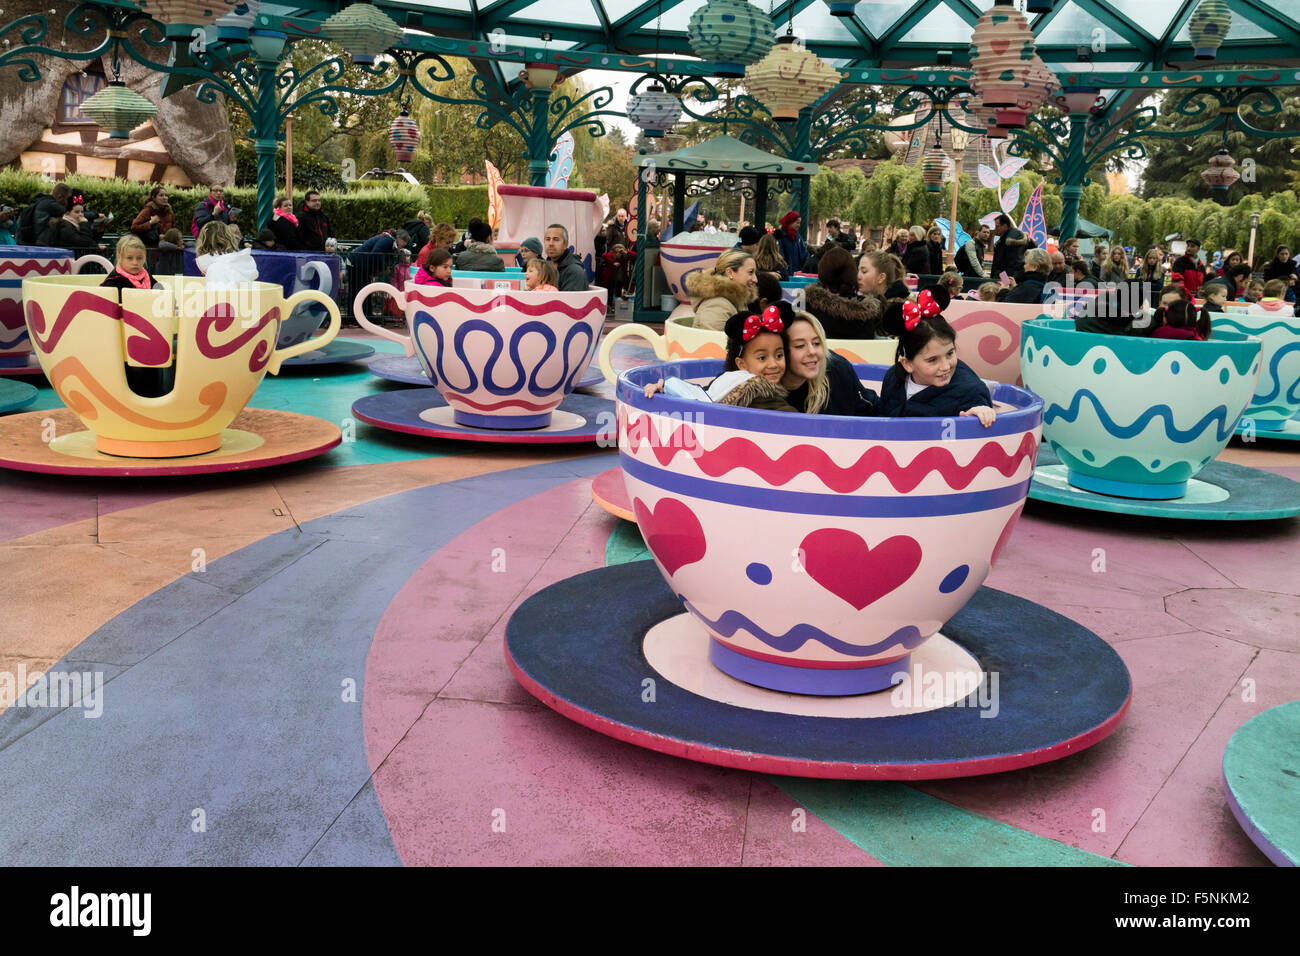 The Mad Hatter's tea cups, Disneyland Paris theme park, Marne-la-Vallée, Île-de-France, France Stock Photo